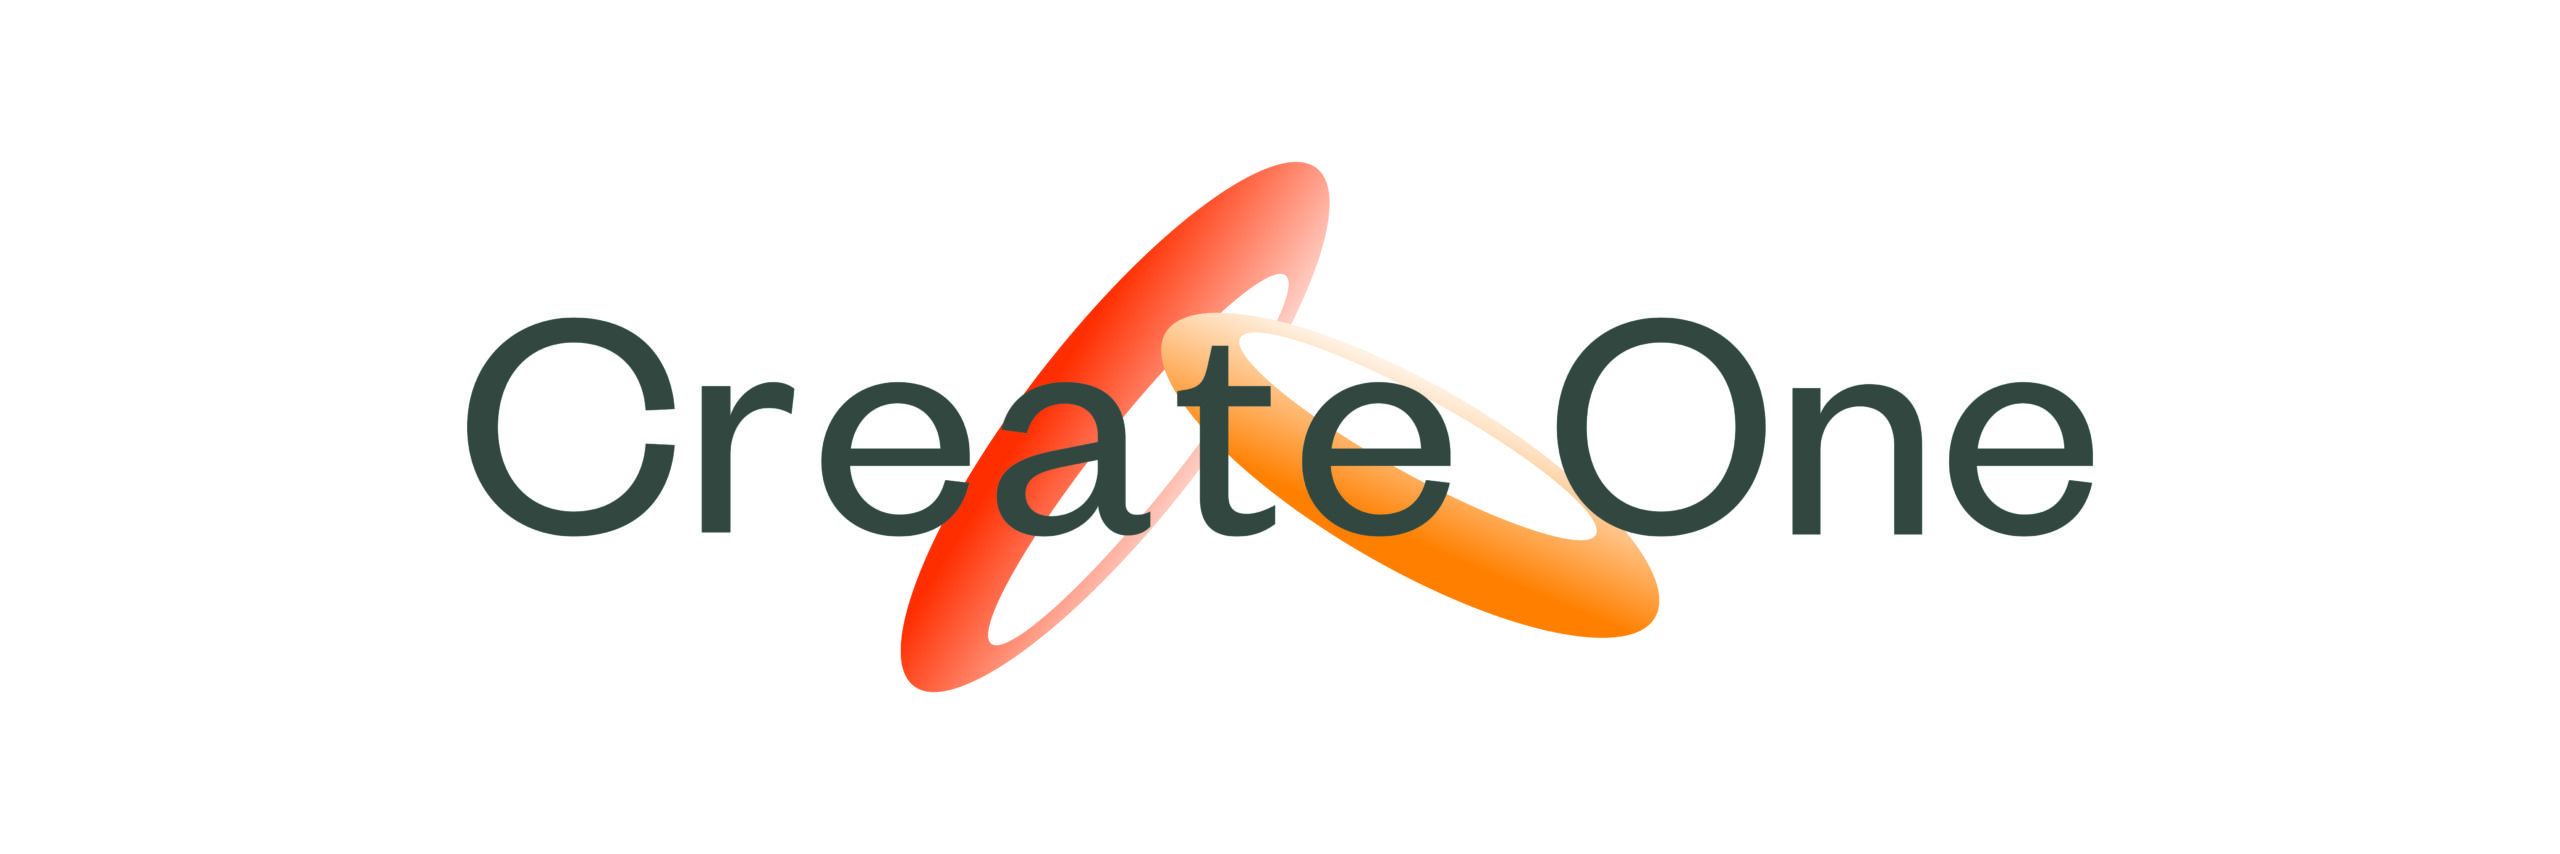 Create One